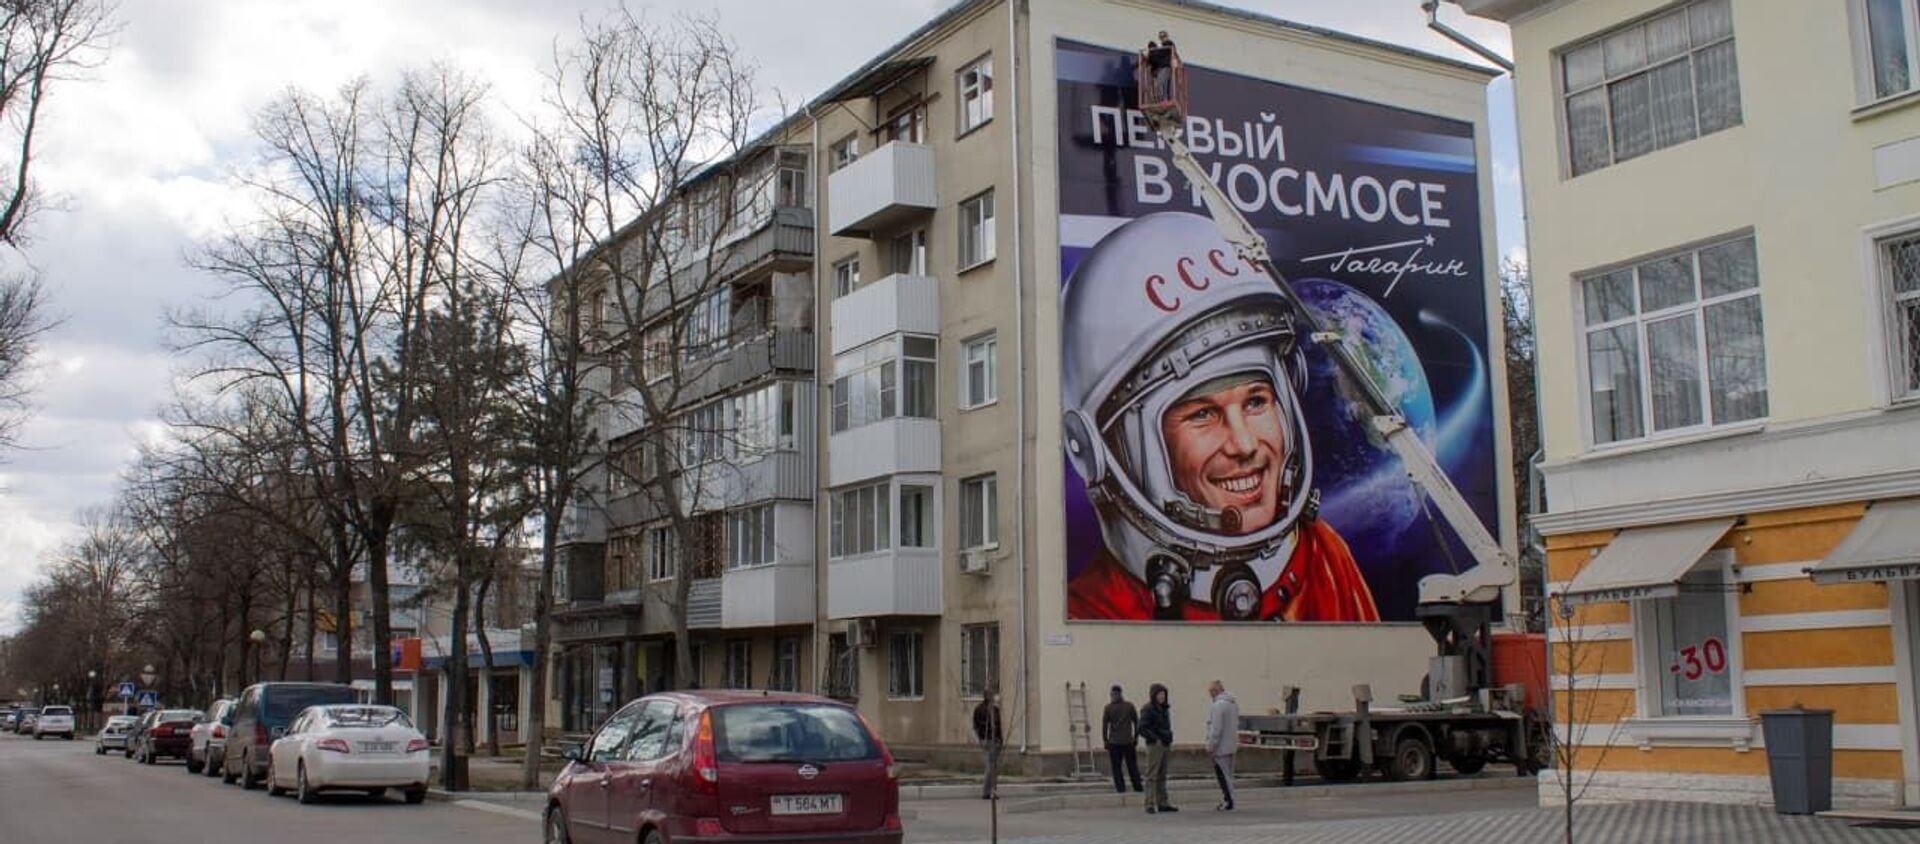 В Тирасполе появился 11-метровый баннер, посвященный Юрию Гагарину - Sputnik Молдова, 1920, 08.04.2021